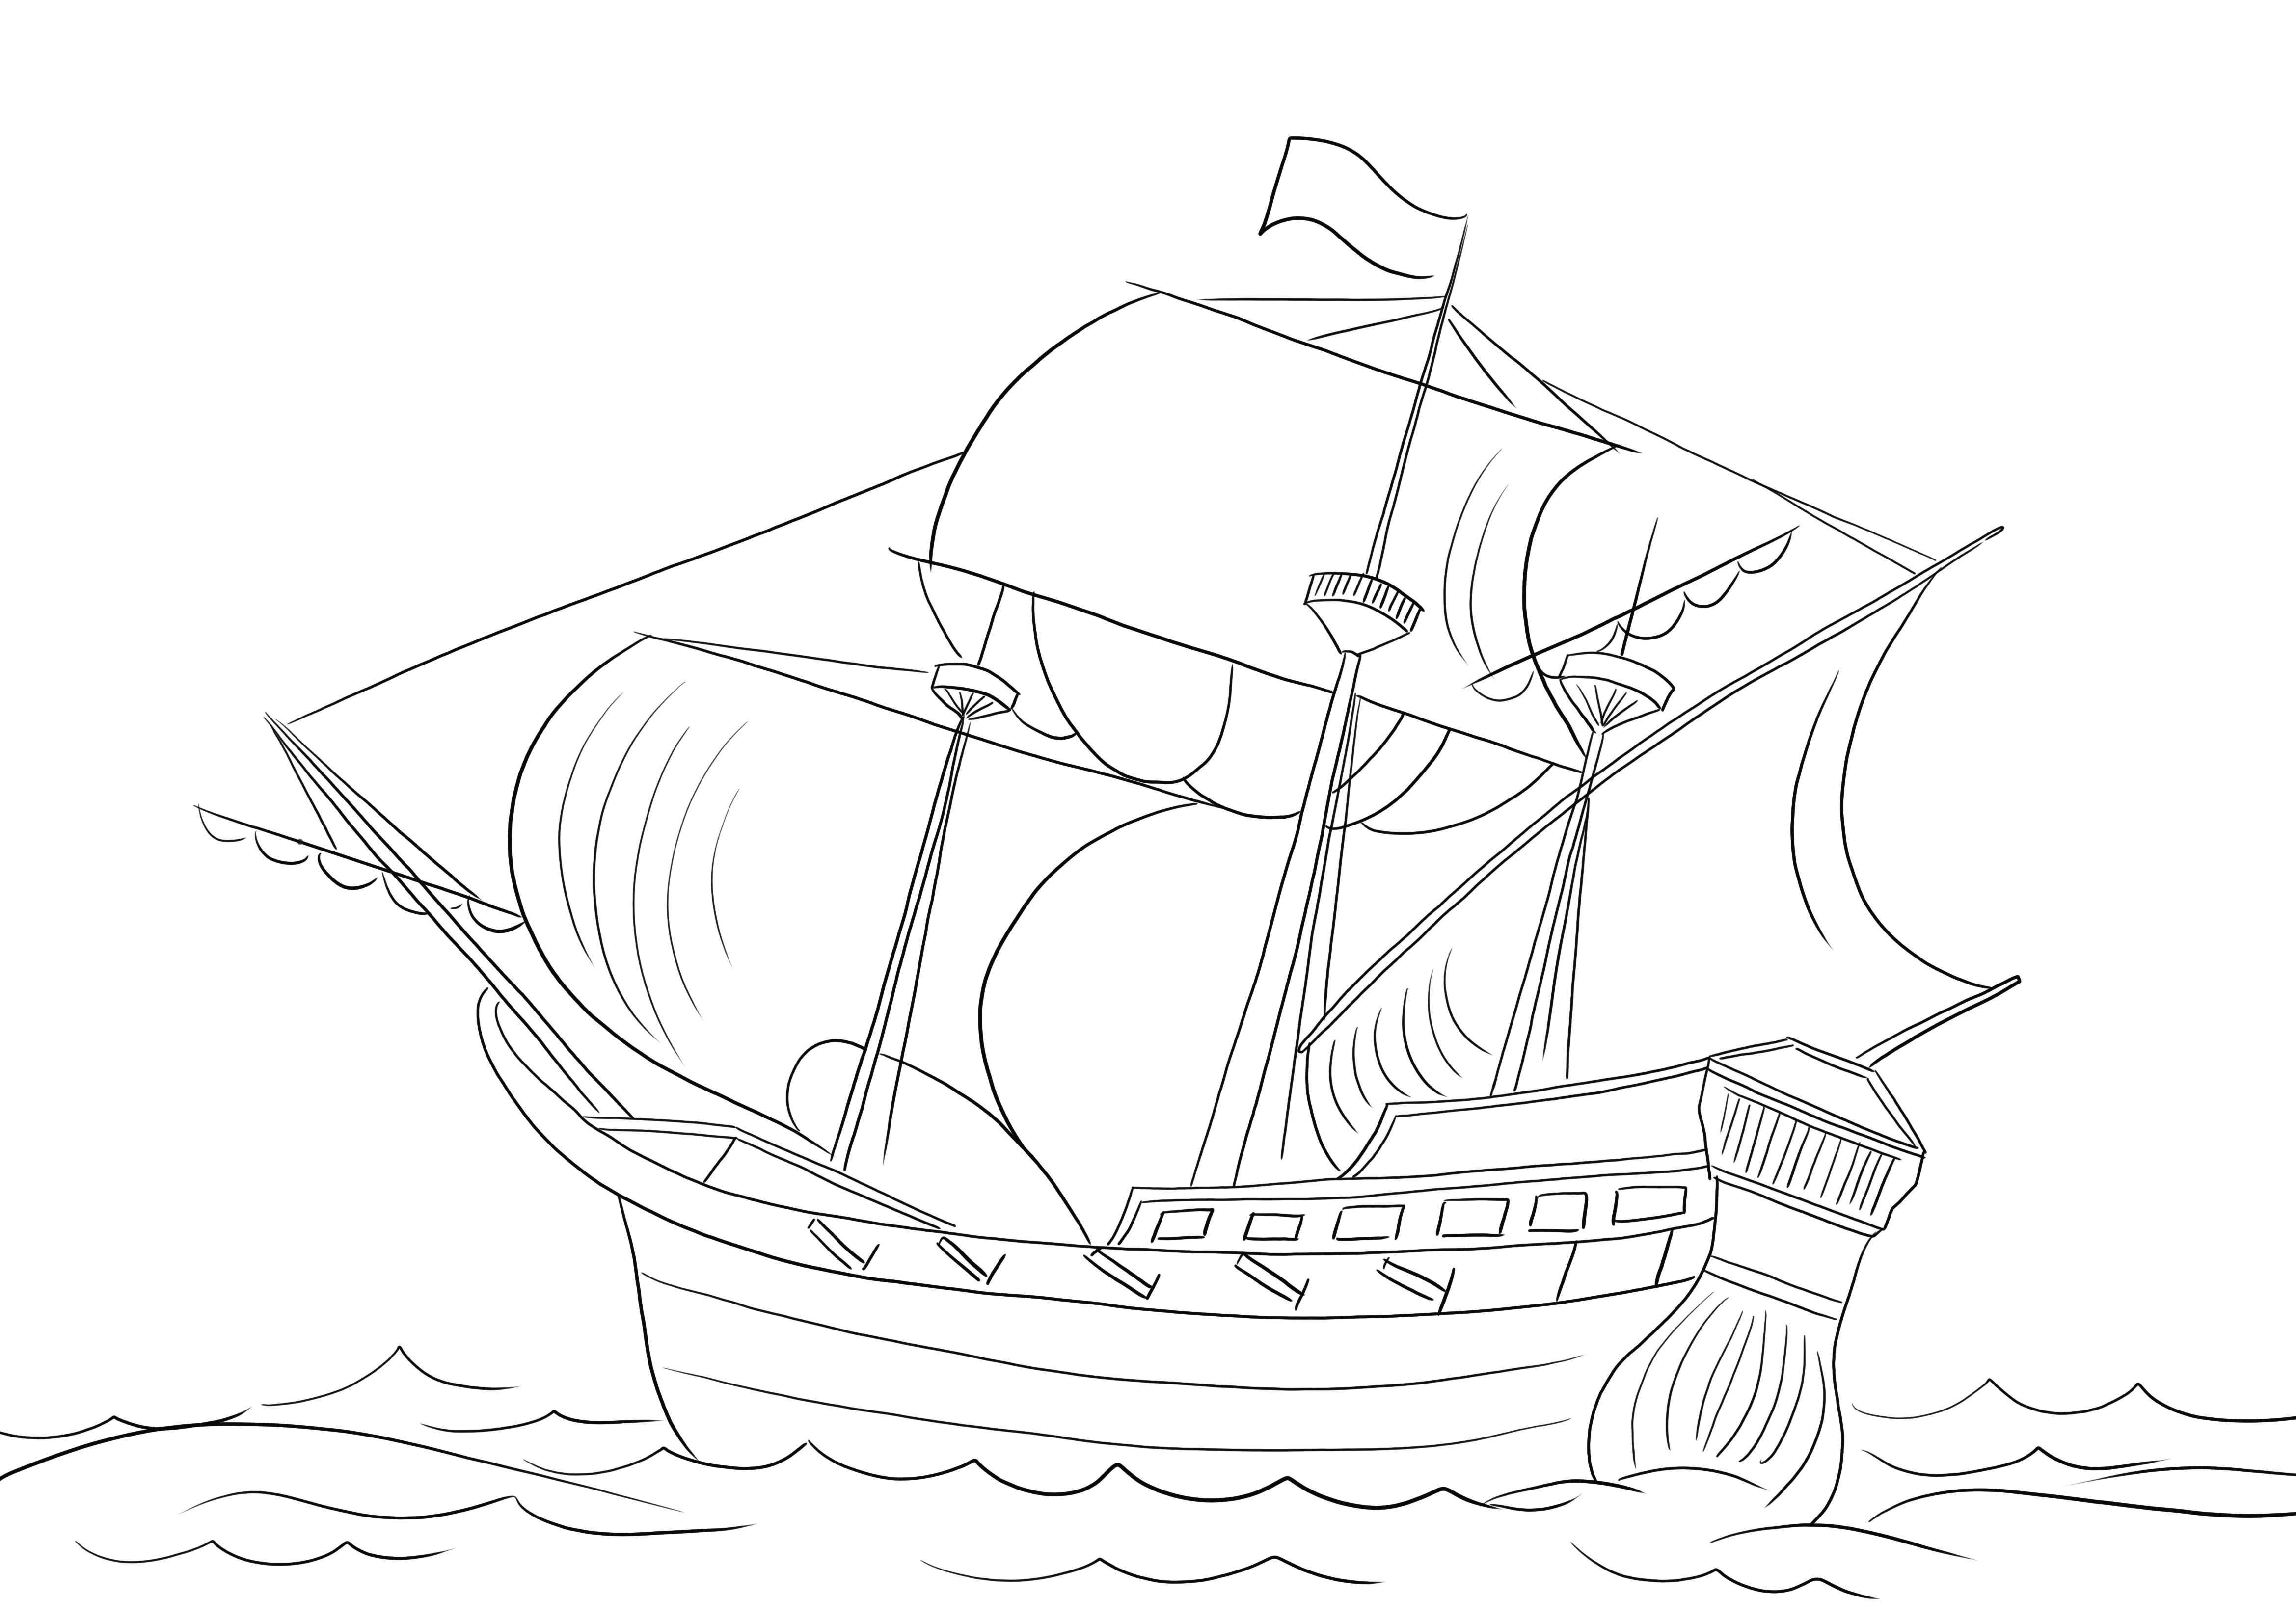 Impressão gratuita de um Navio Pirata para colorir e aprender sobre os tipos de navios